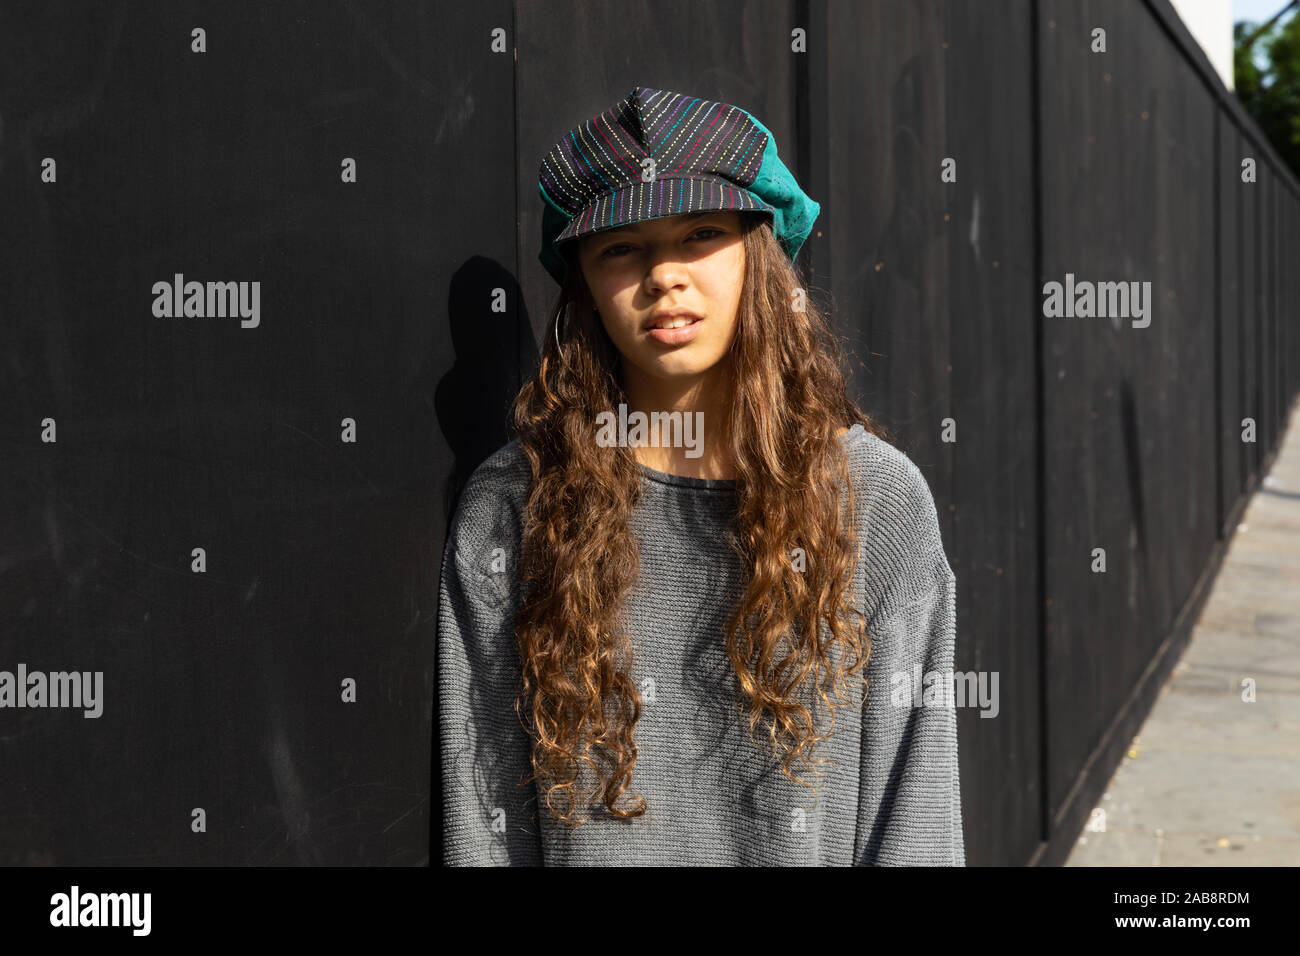 Emotionless ragazza con colorati hat e capelli lunghi marrone. Contesto urbano e sfondo nero. Foto Stock